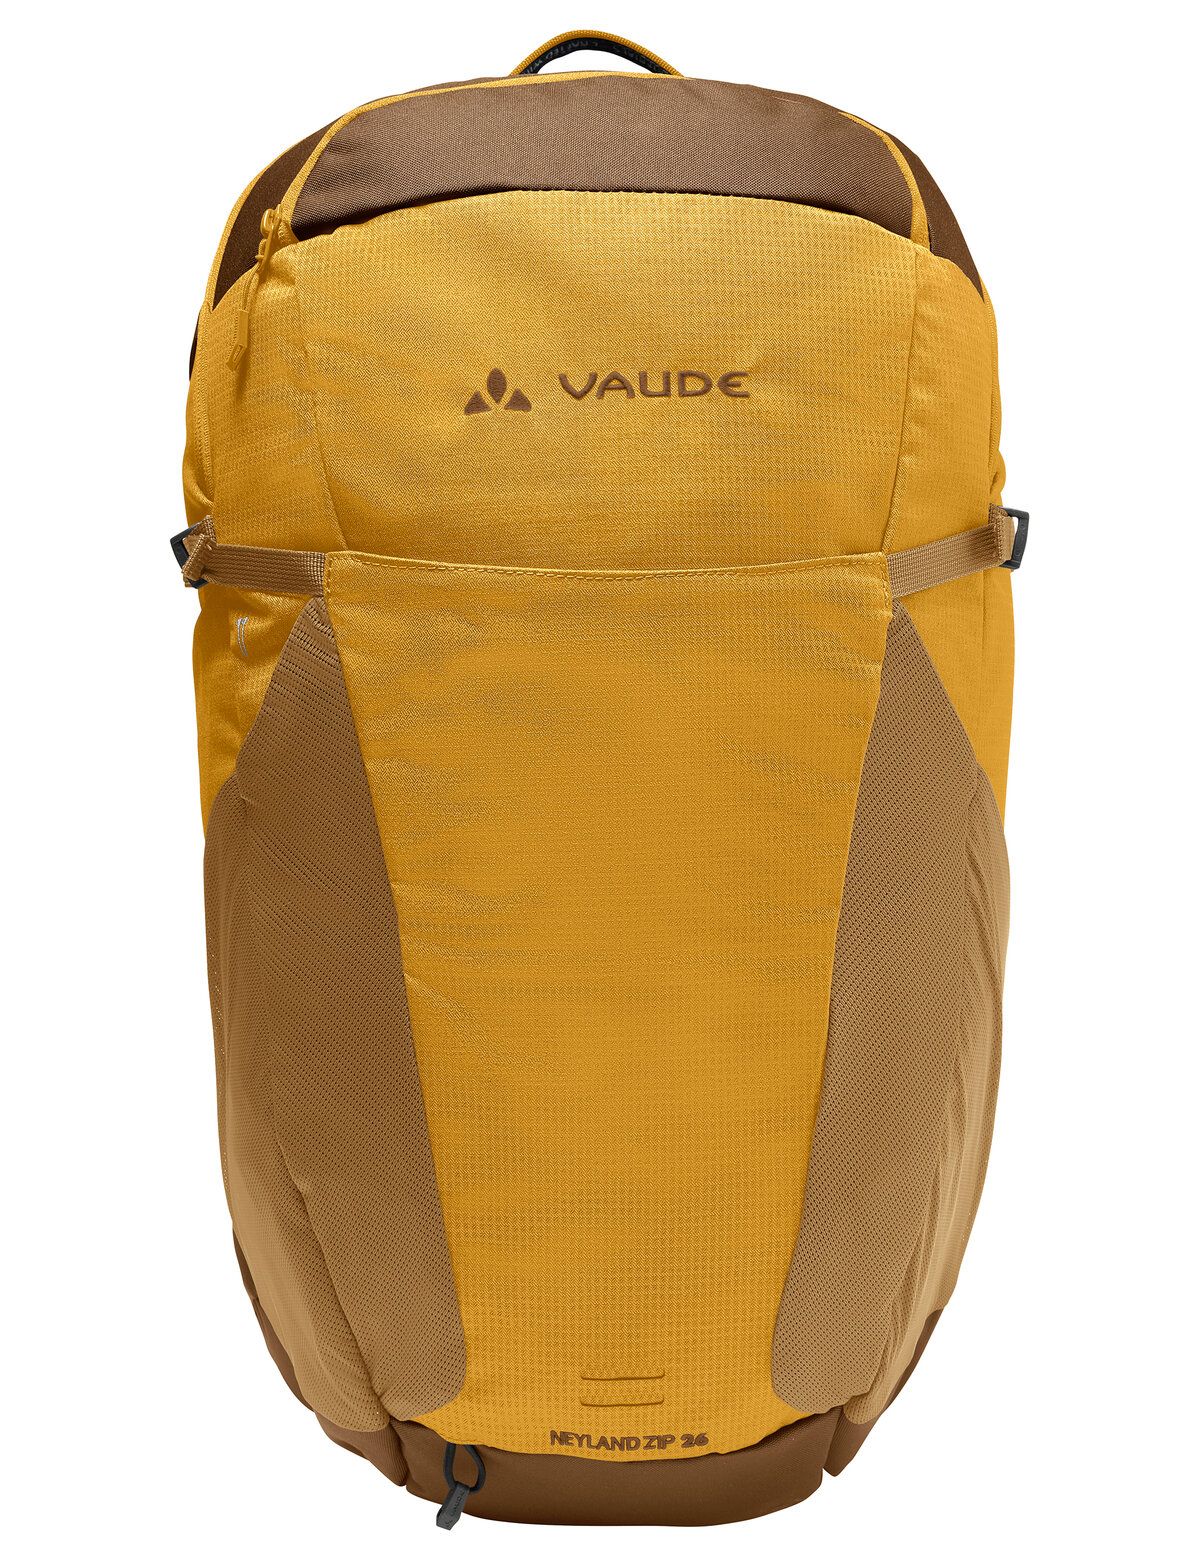 Vaude  Neyland Zip 26 - Wanderrucksack - Gelb (Burnt Yellow)